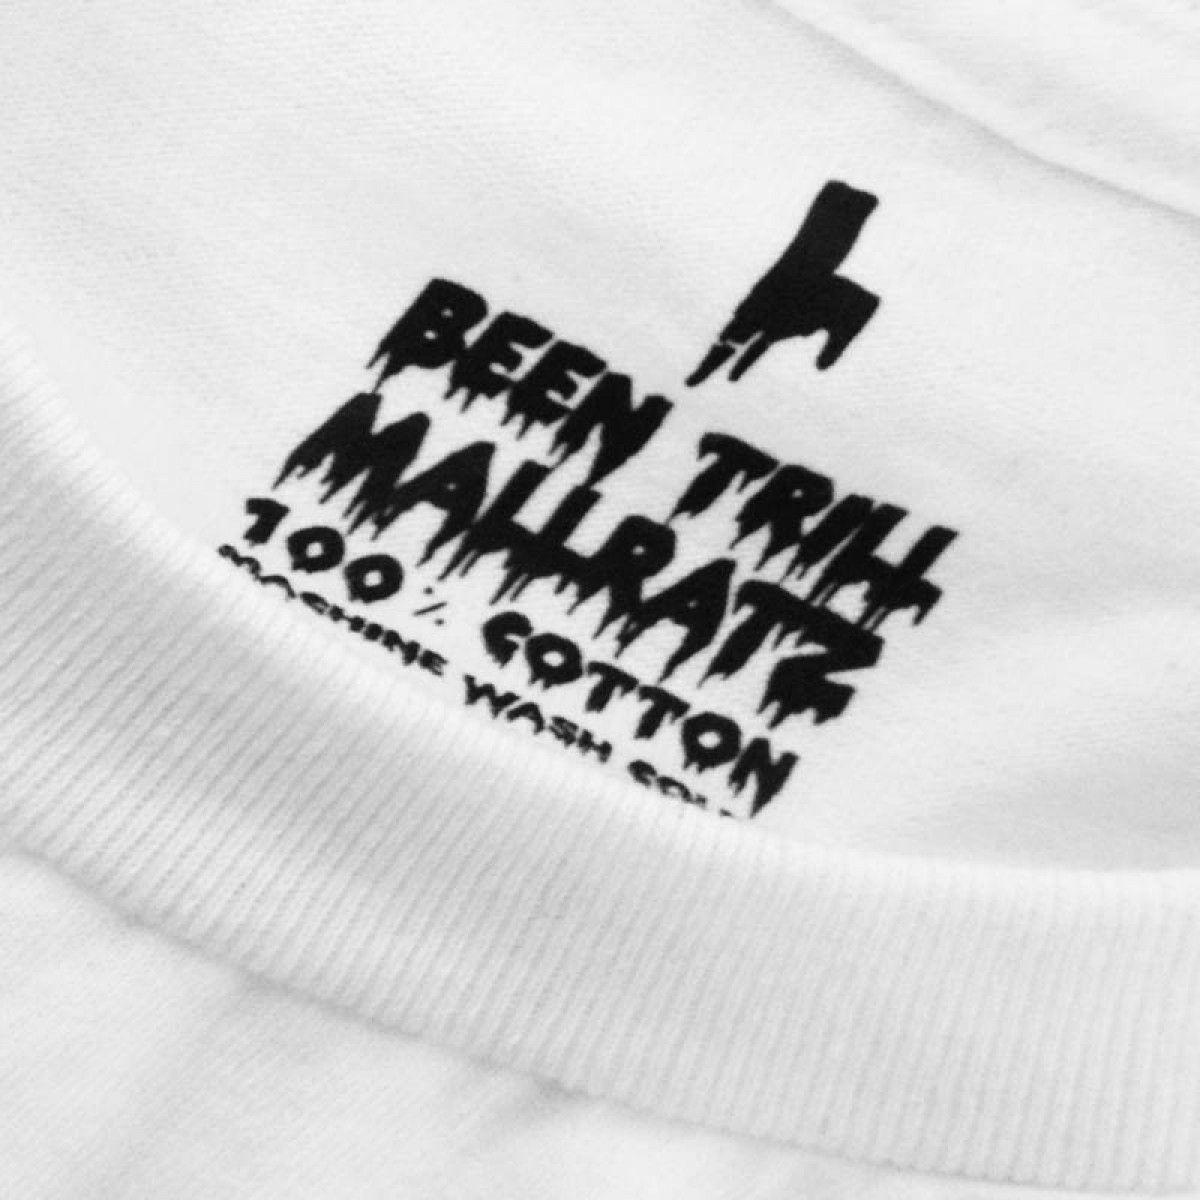 Been Trill Logo - Been Trill Trill Mall Ratz T Shirt. MENSWEAR, WOMENSWEAR